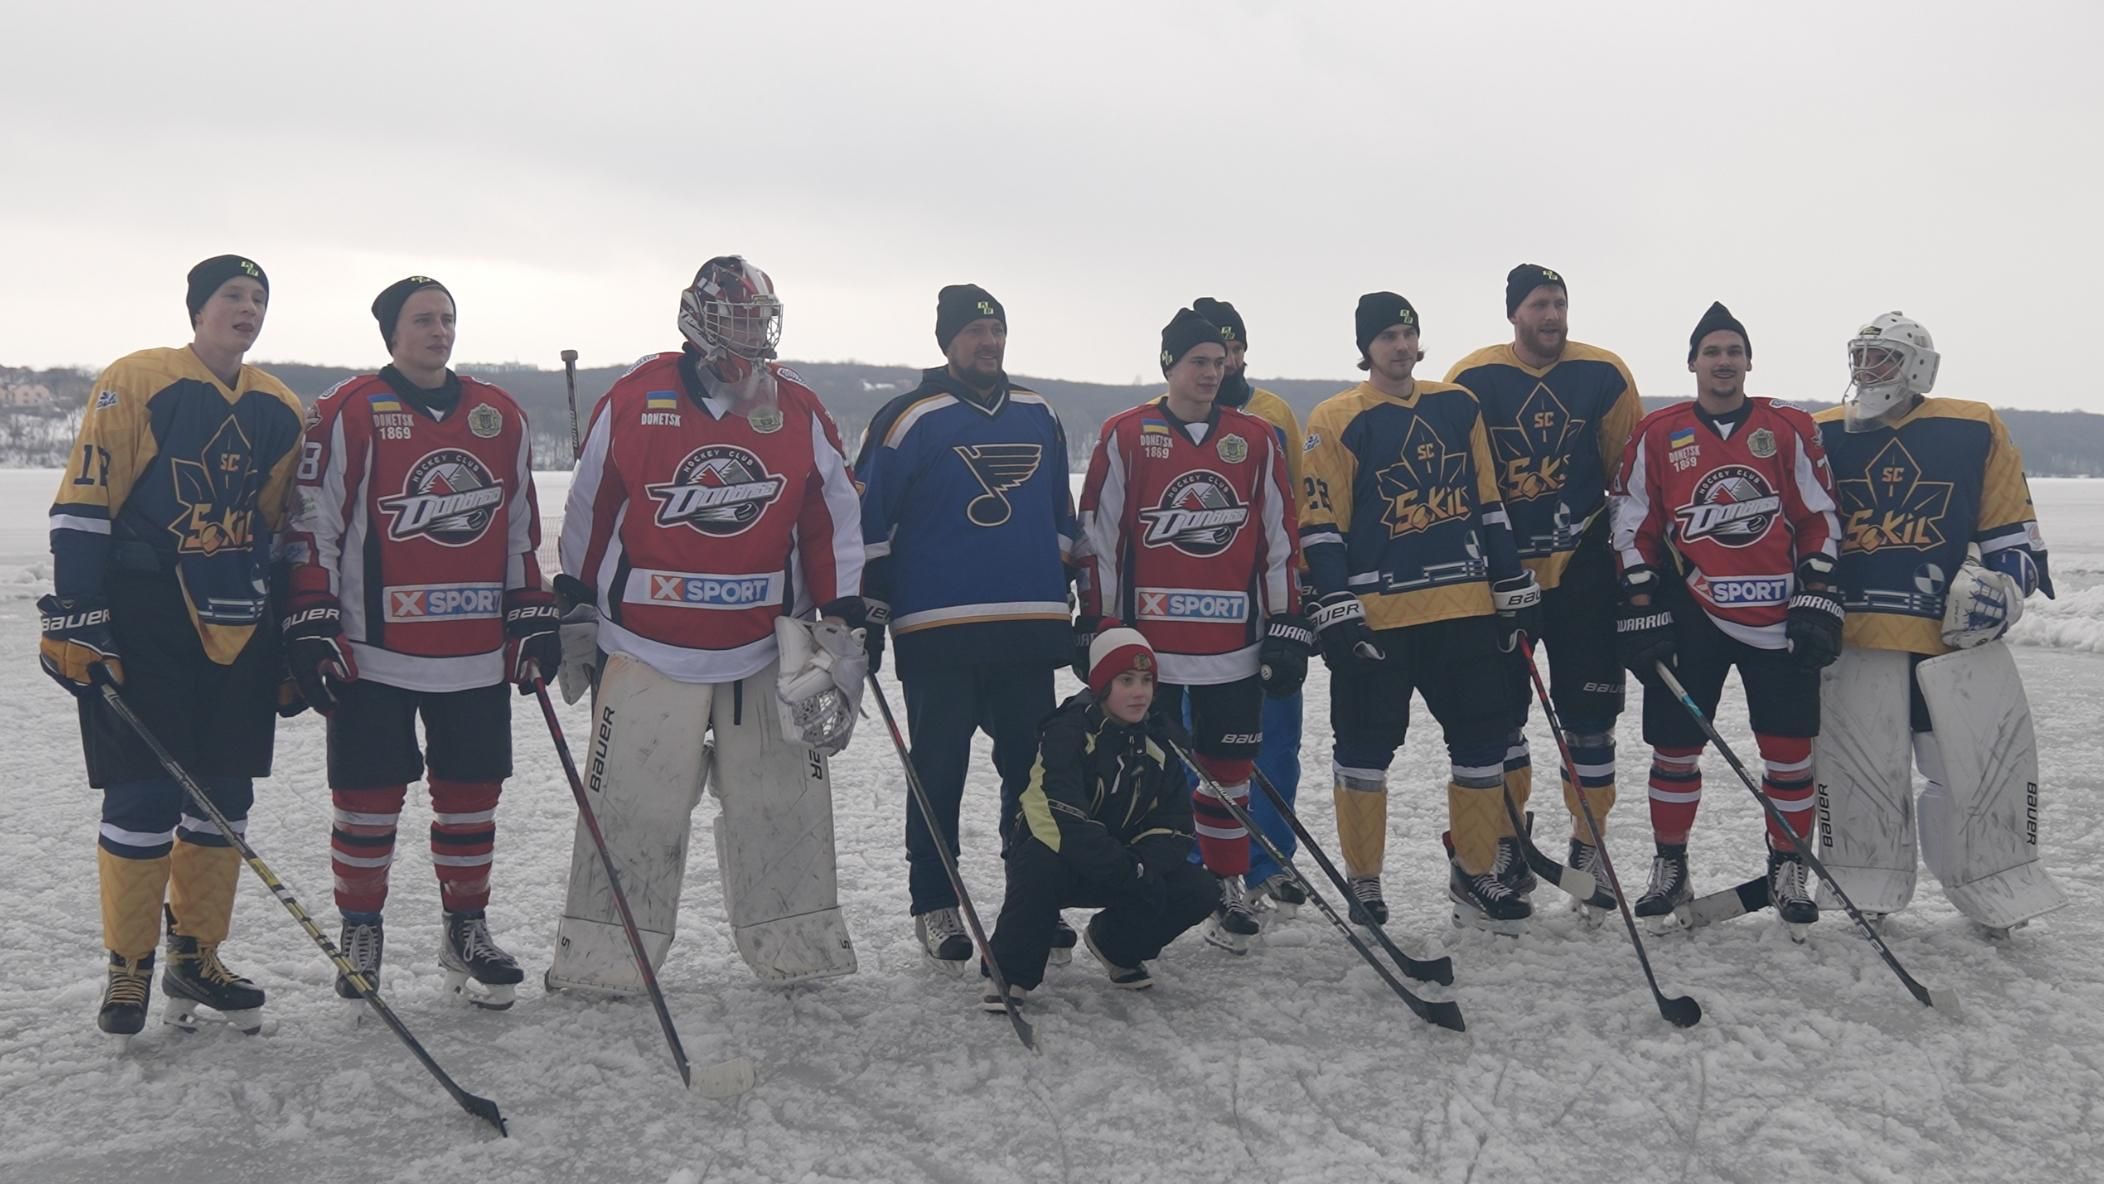 Хоккеисты провели матч под открытым небом на замерзшем озере в Тернополе: фото и видео